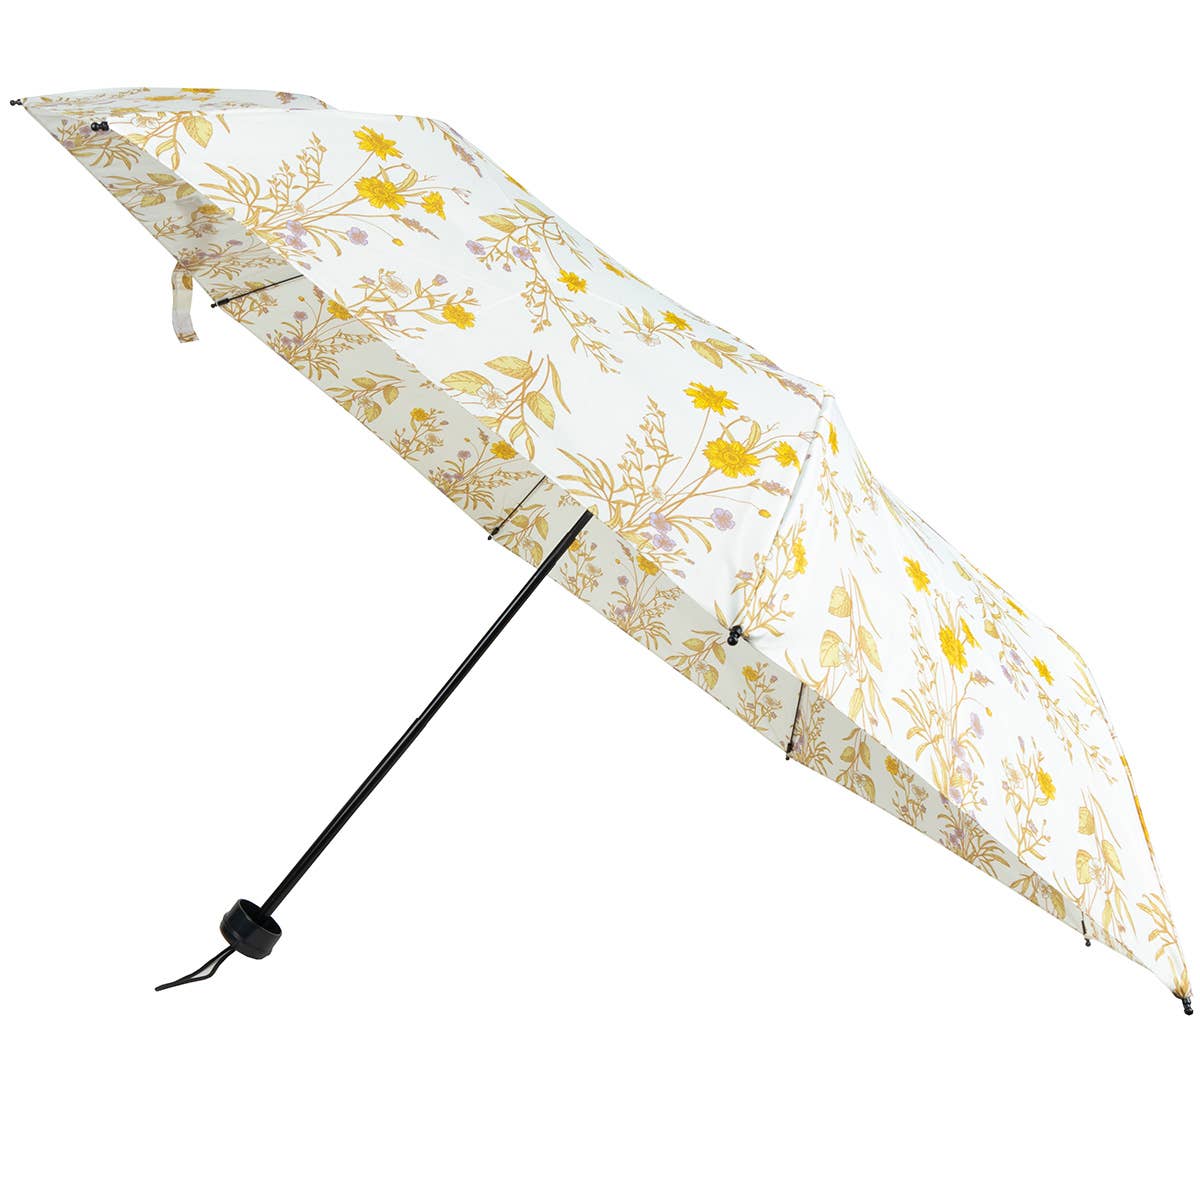 Compact Travel Floral Umbrella - Manual Open